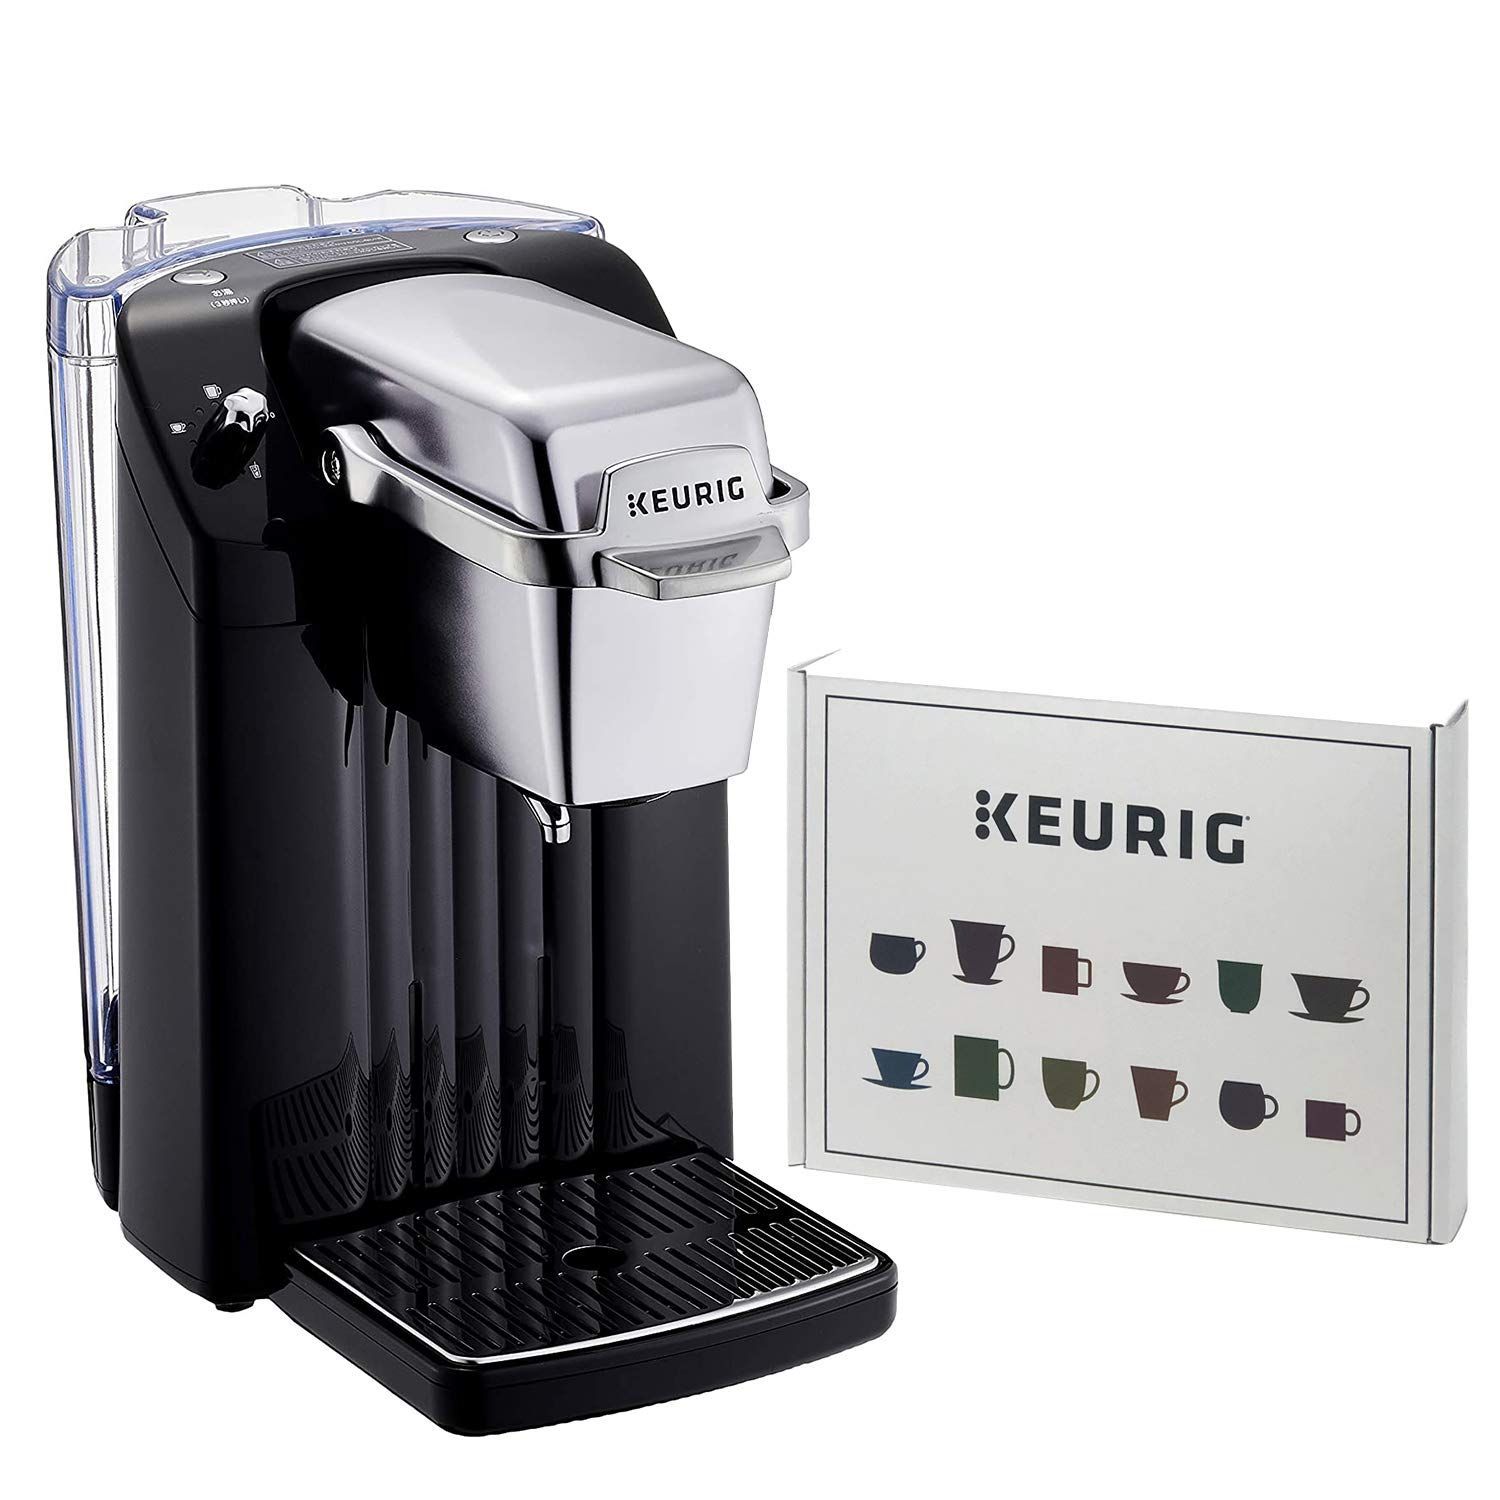 新品 未使用 KEURIG コーヒーメーカー BS300 ブラック